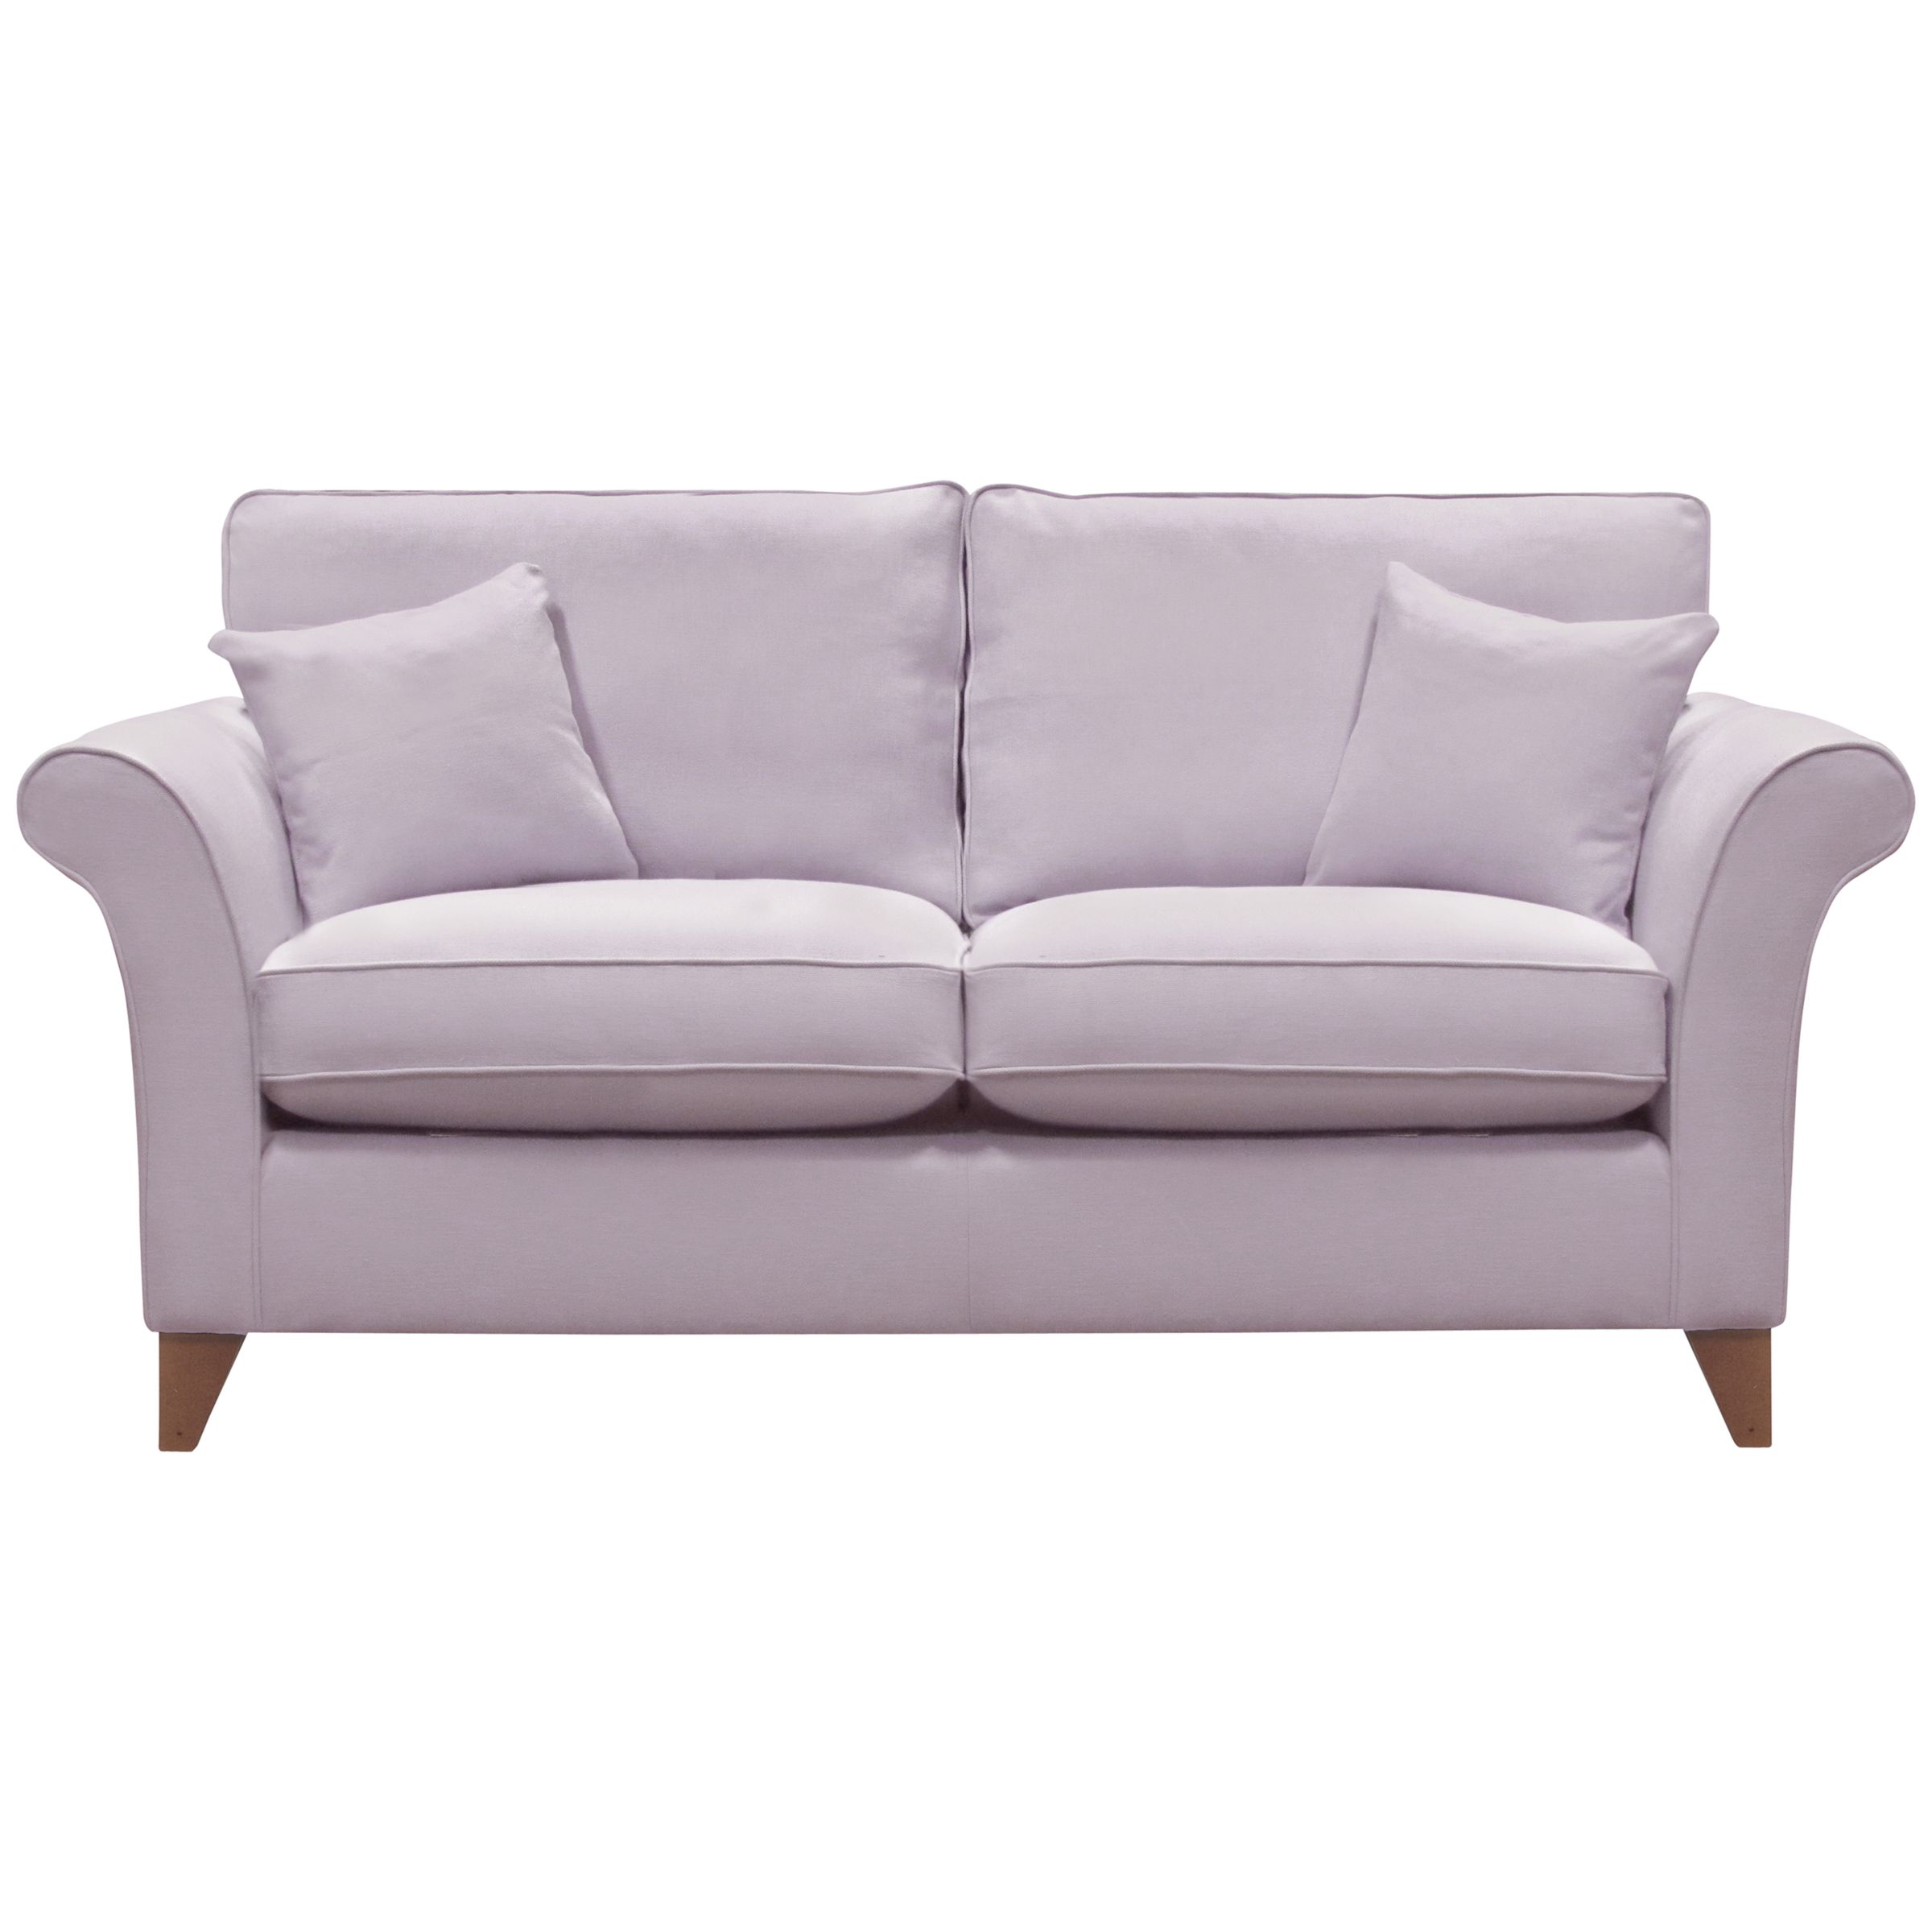 John Lewis Charlotte Large Sofa, Lotus Lilac, width 197cm